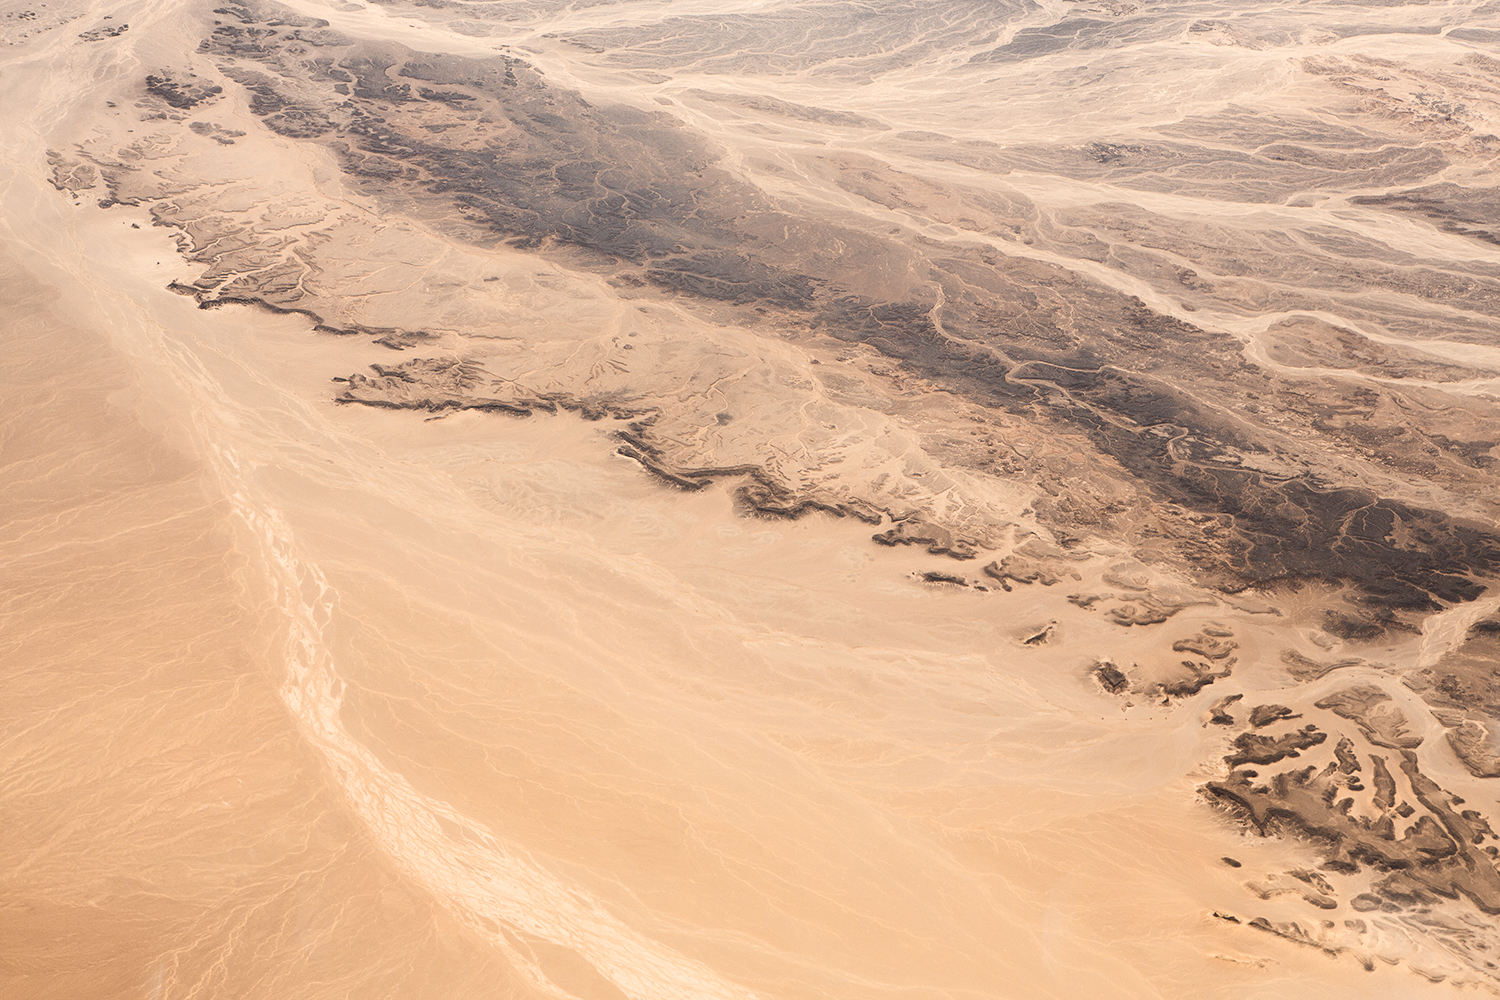  Deserts - Survey #4, 2015 //  80 cm x 120 cm  